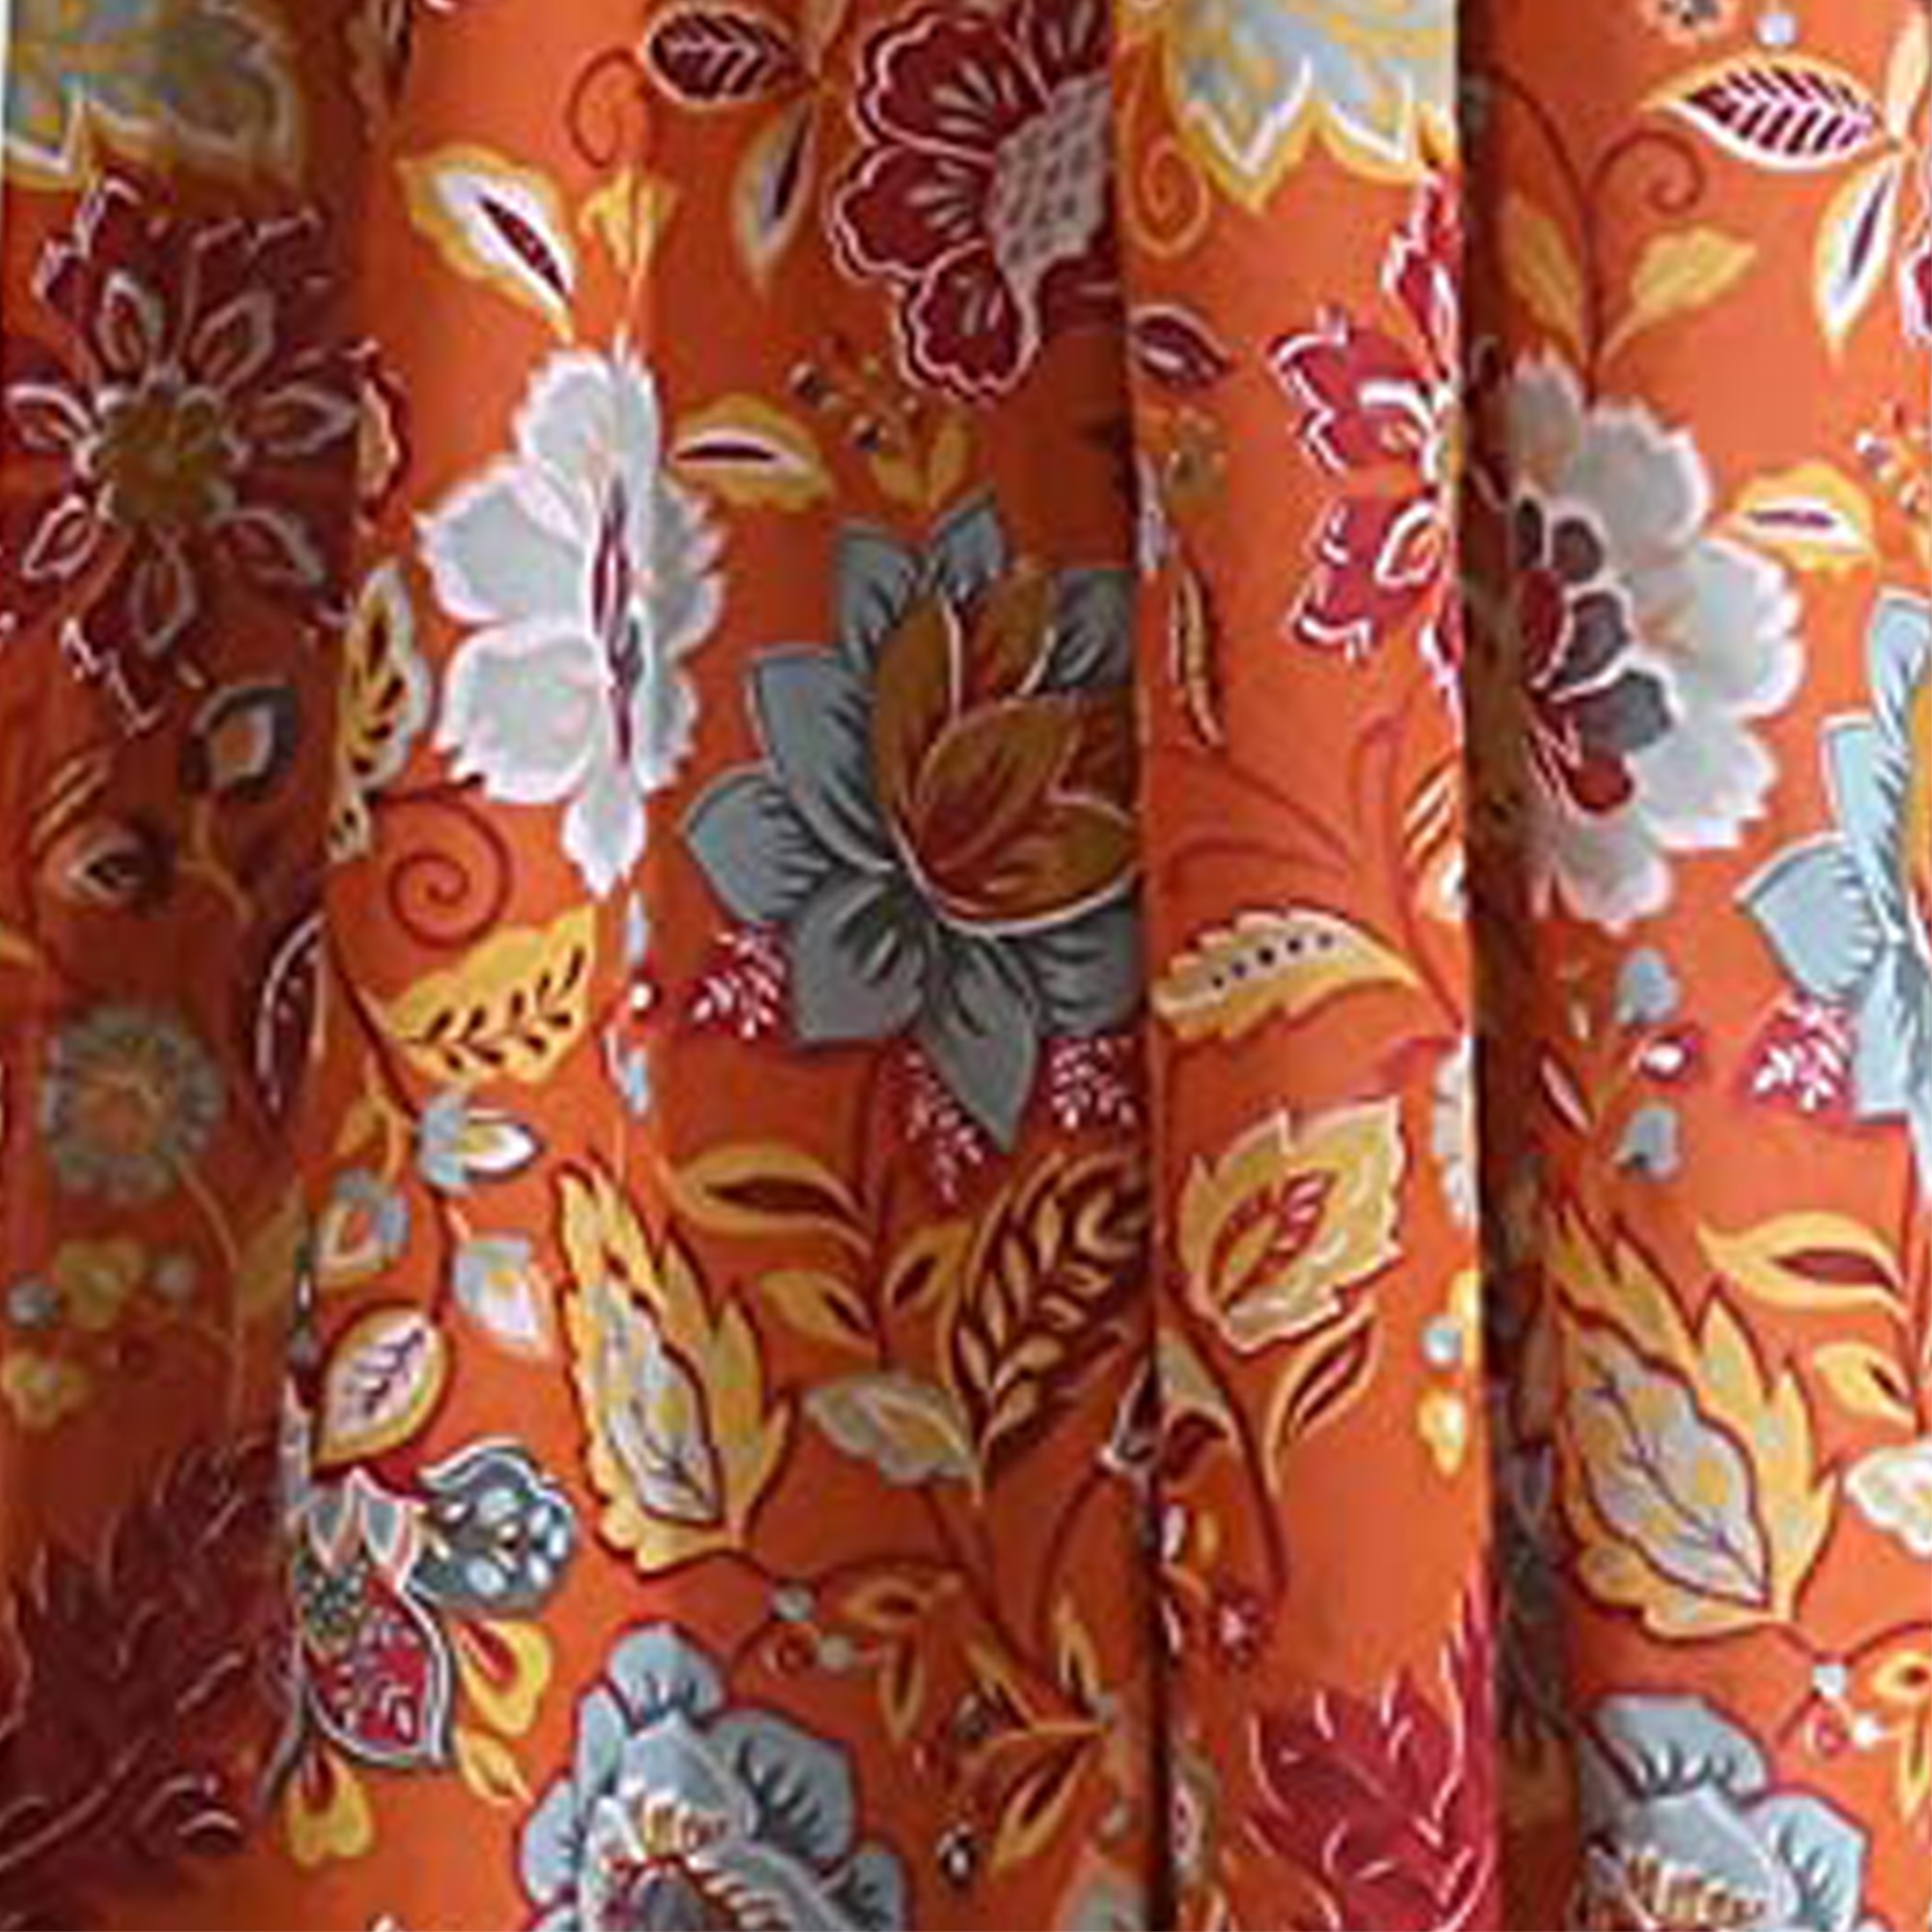 Benjara Paris 4 Piece Floral Print Fabric Curtain Panel with Ties, Orange